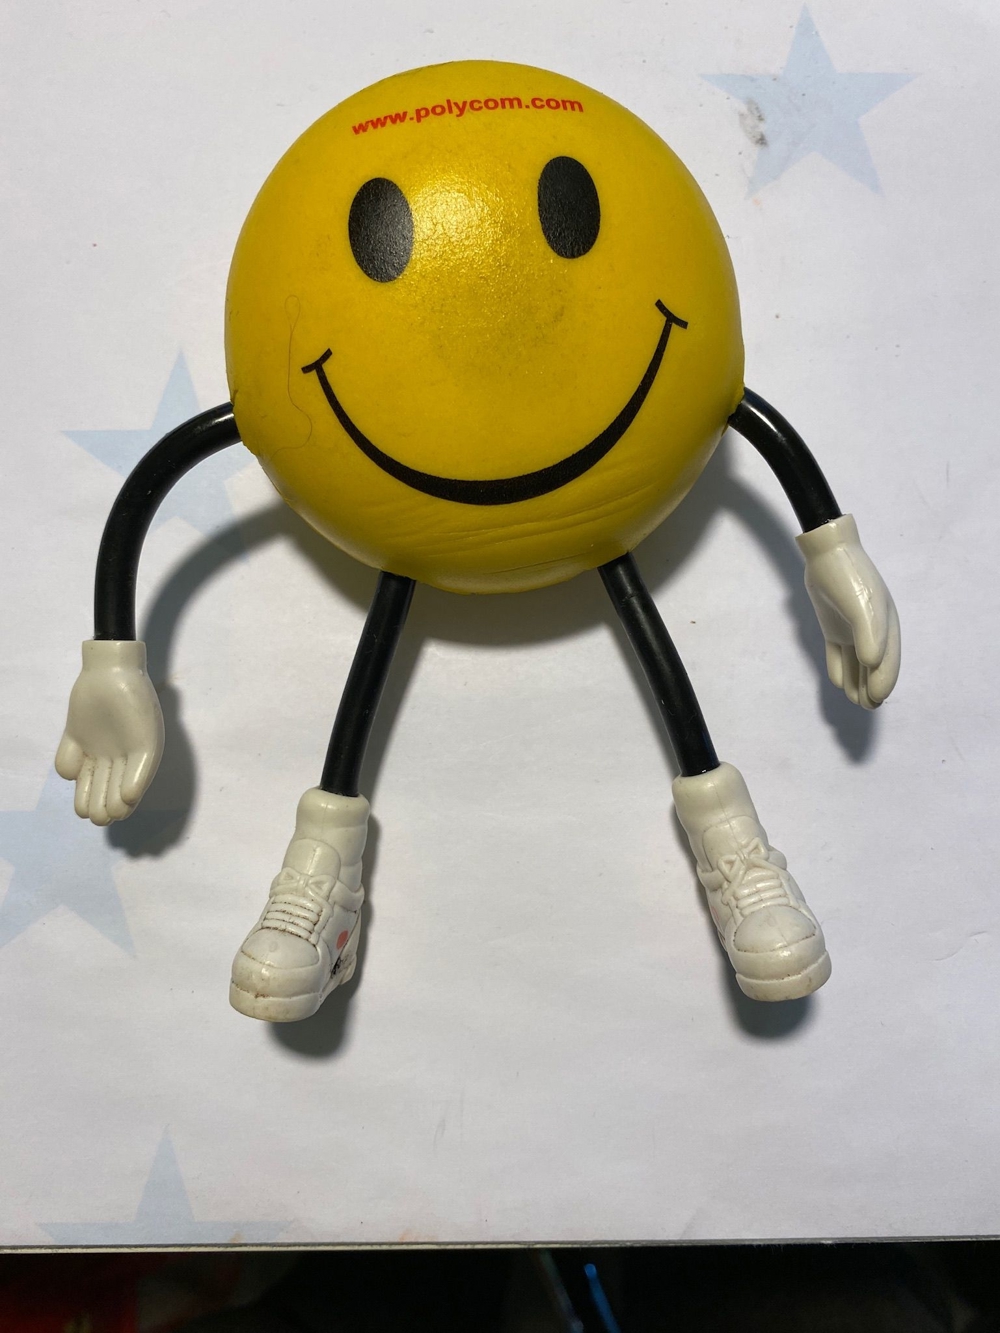 Smiley Figur "Polycom" ca. 14 cm